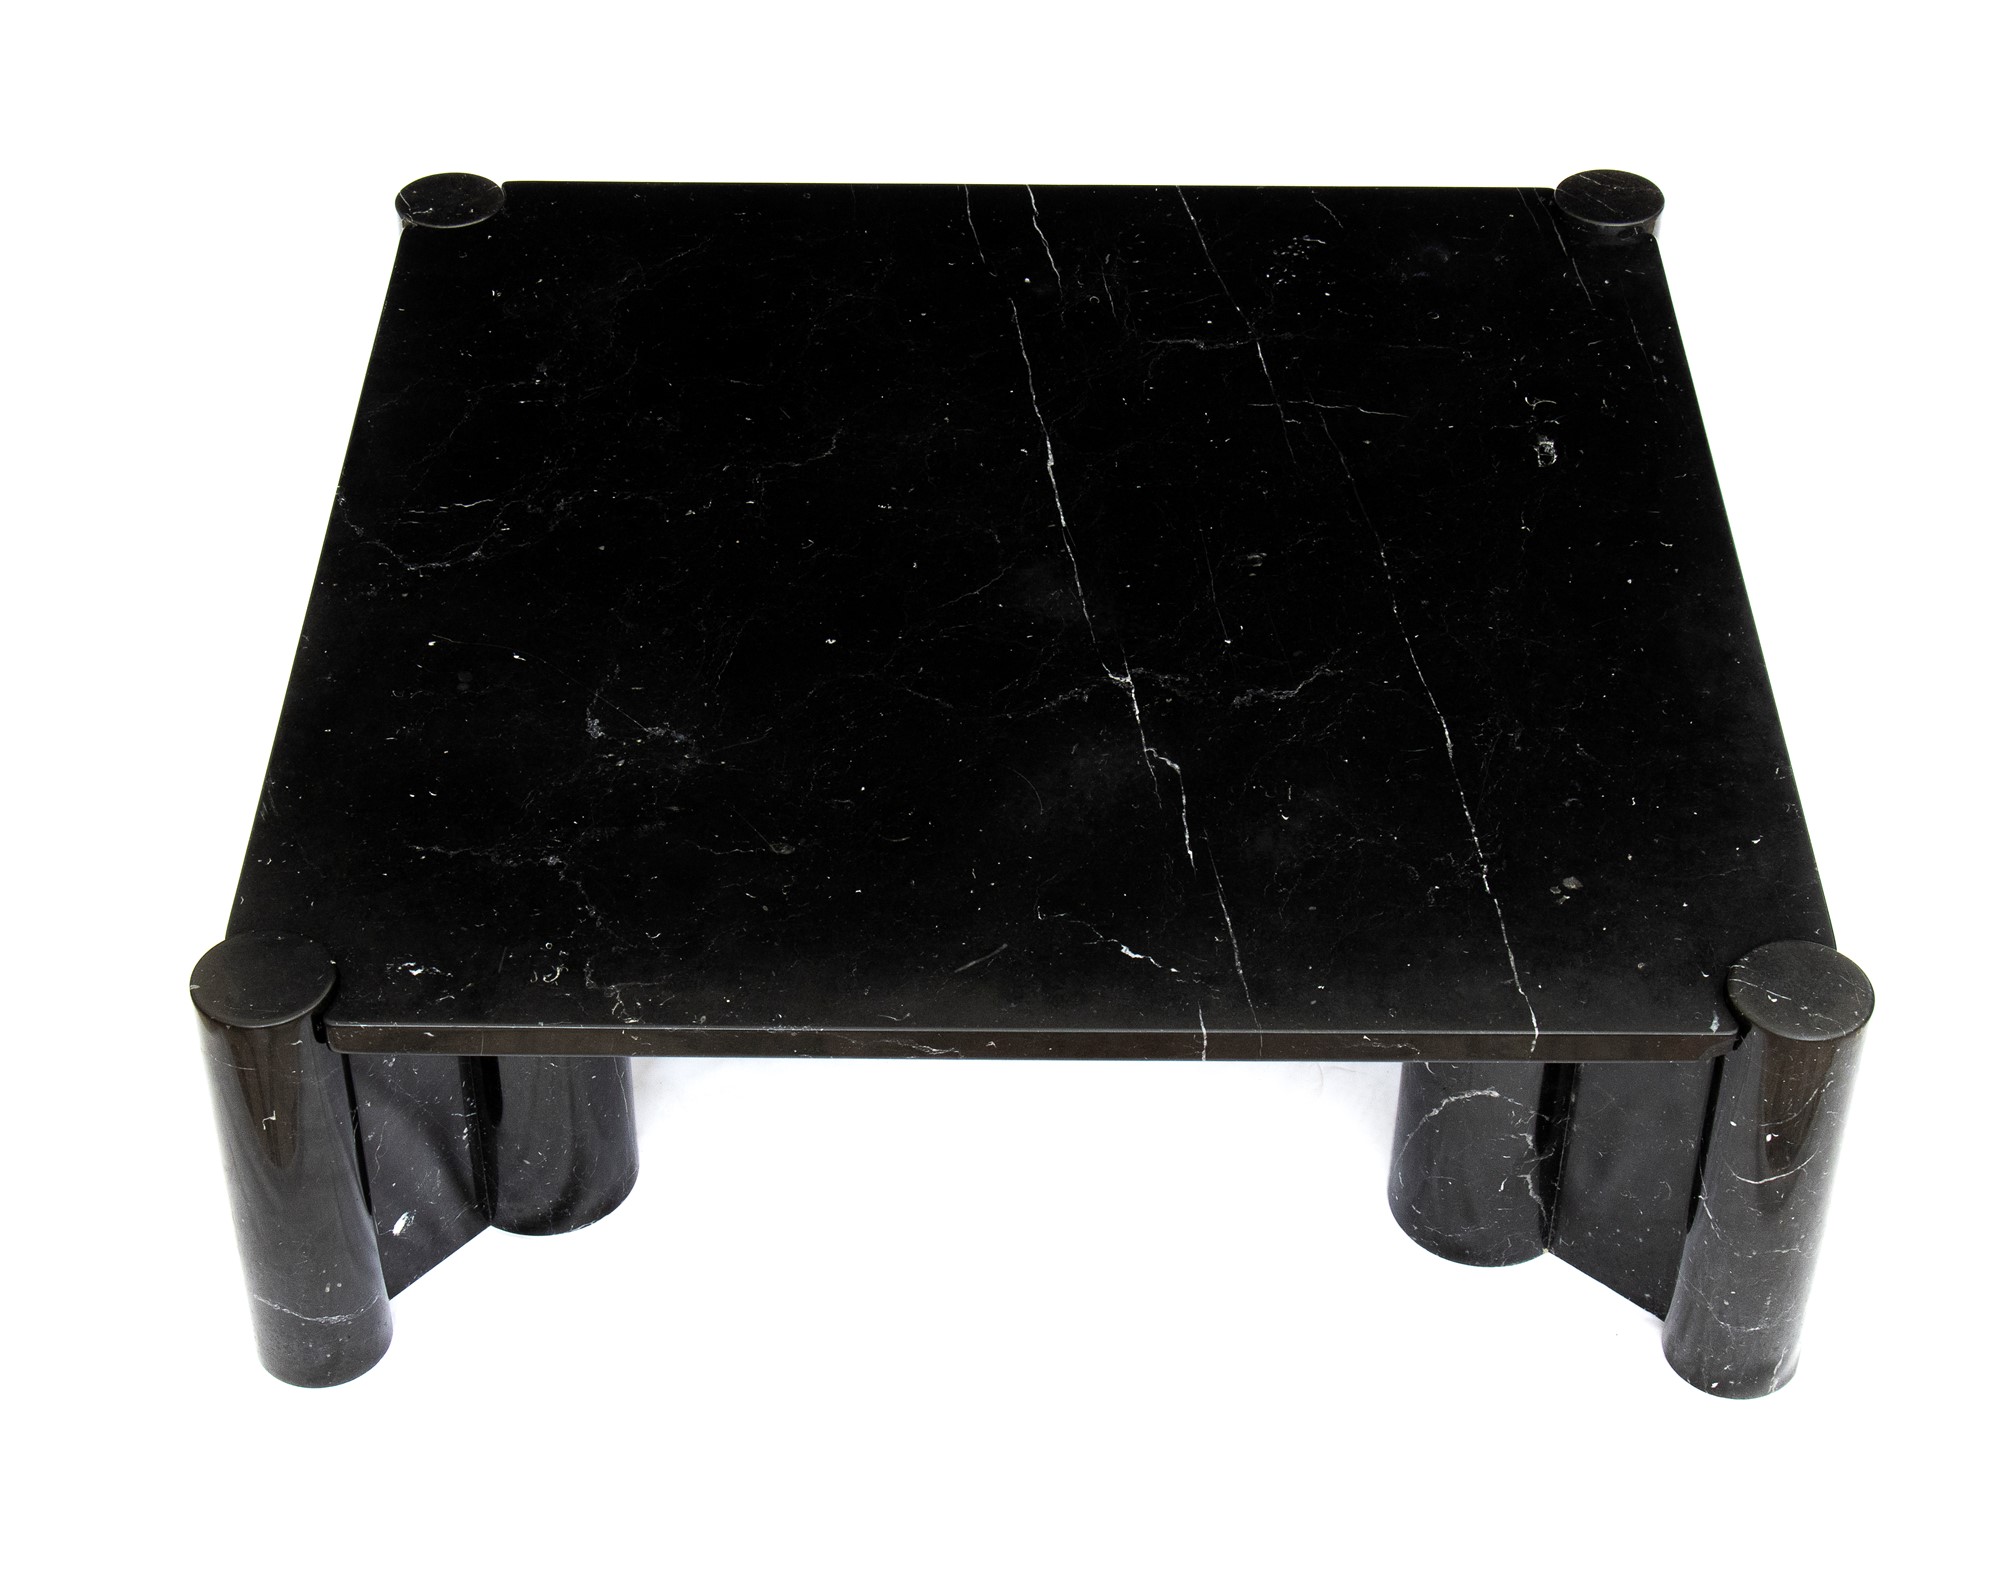 Gae Aulenti Palazzolo dello Stella 1927-Milano 2012 Living room table in black marble marquinia mod - Image 4 of 23